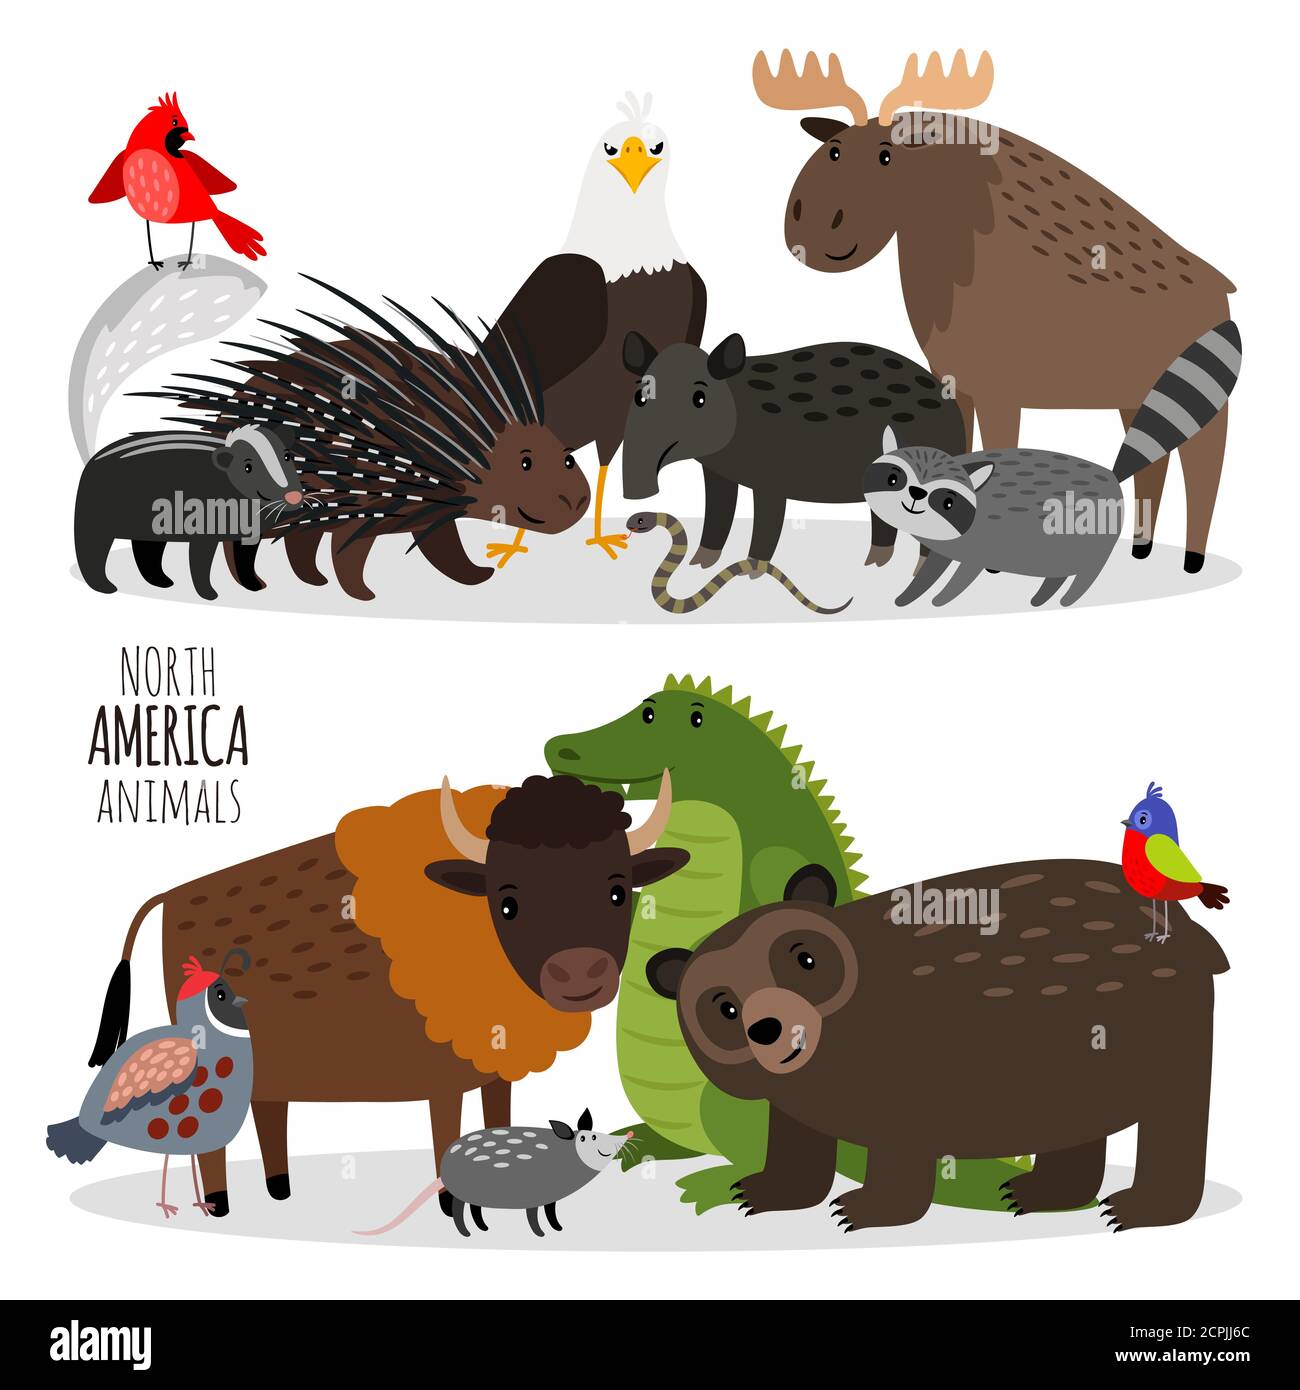 Beliebte Nordamerika Tiere Gruppen Vektor Illustration. Bären und Bisons, Stachelschweine und Alligator, Hirsche und Adler Stock Vektor